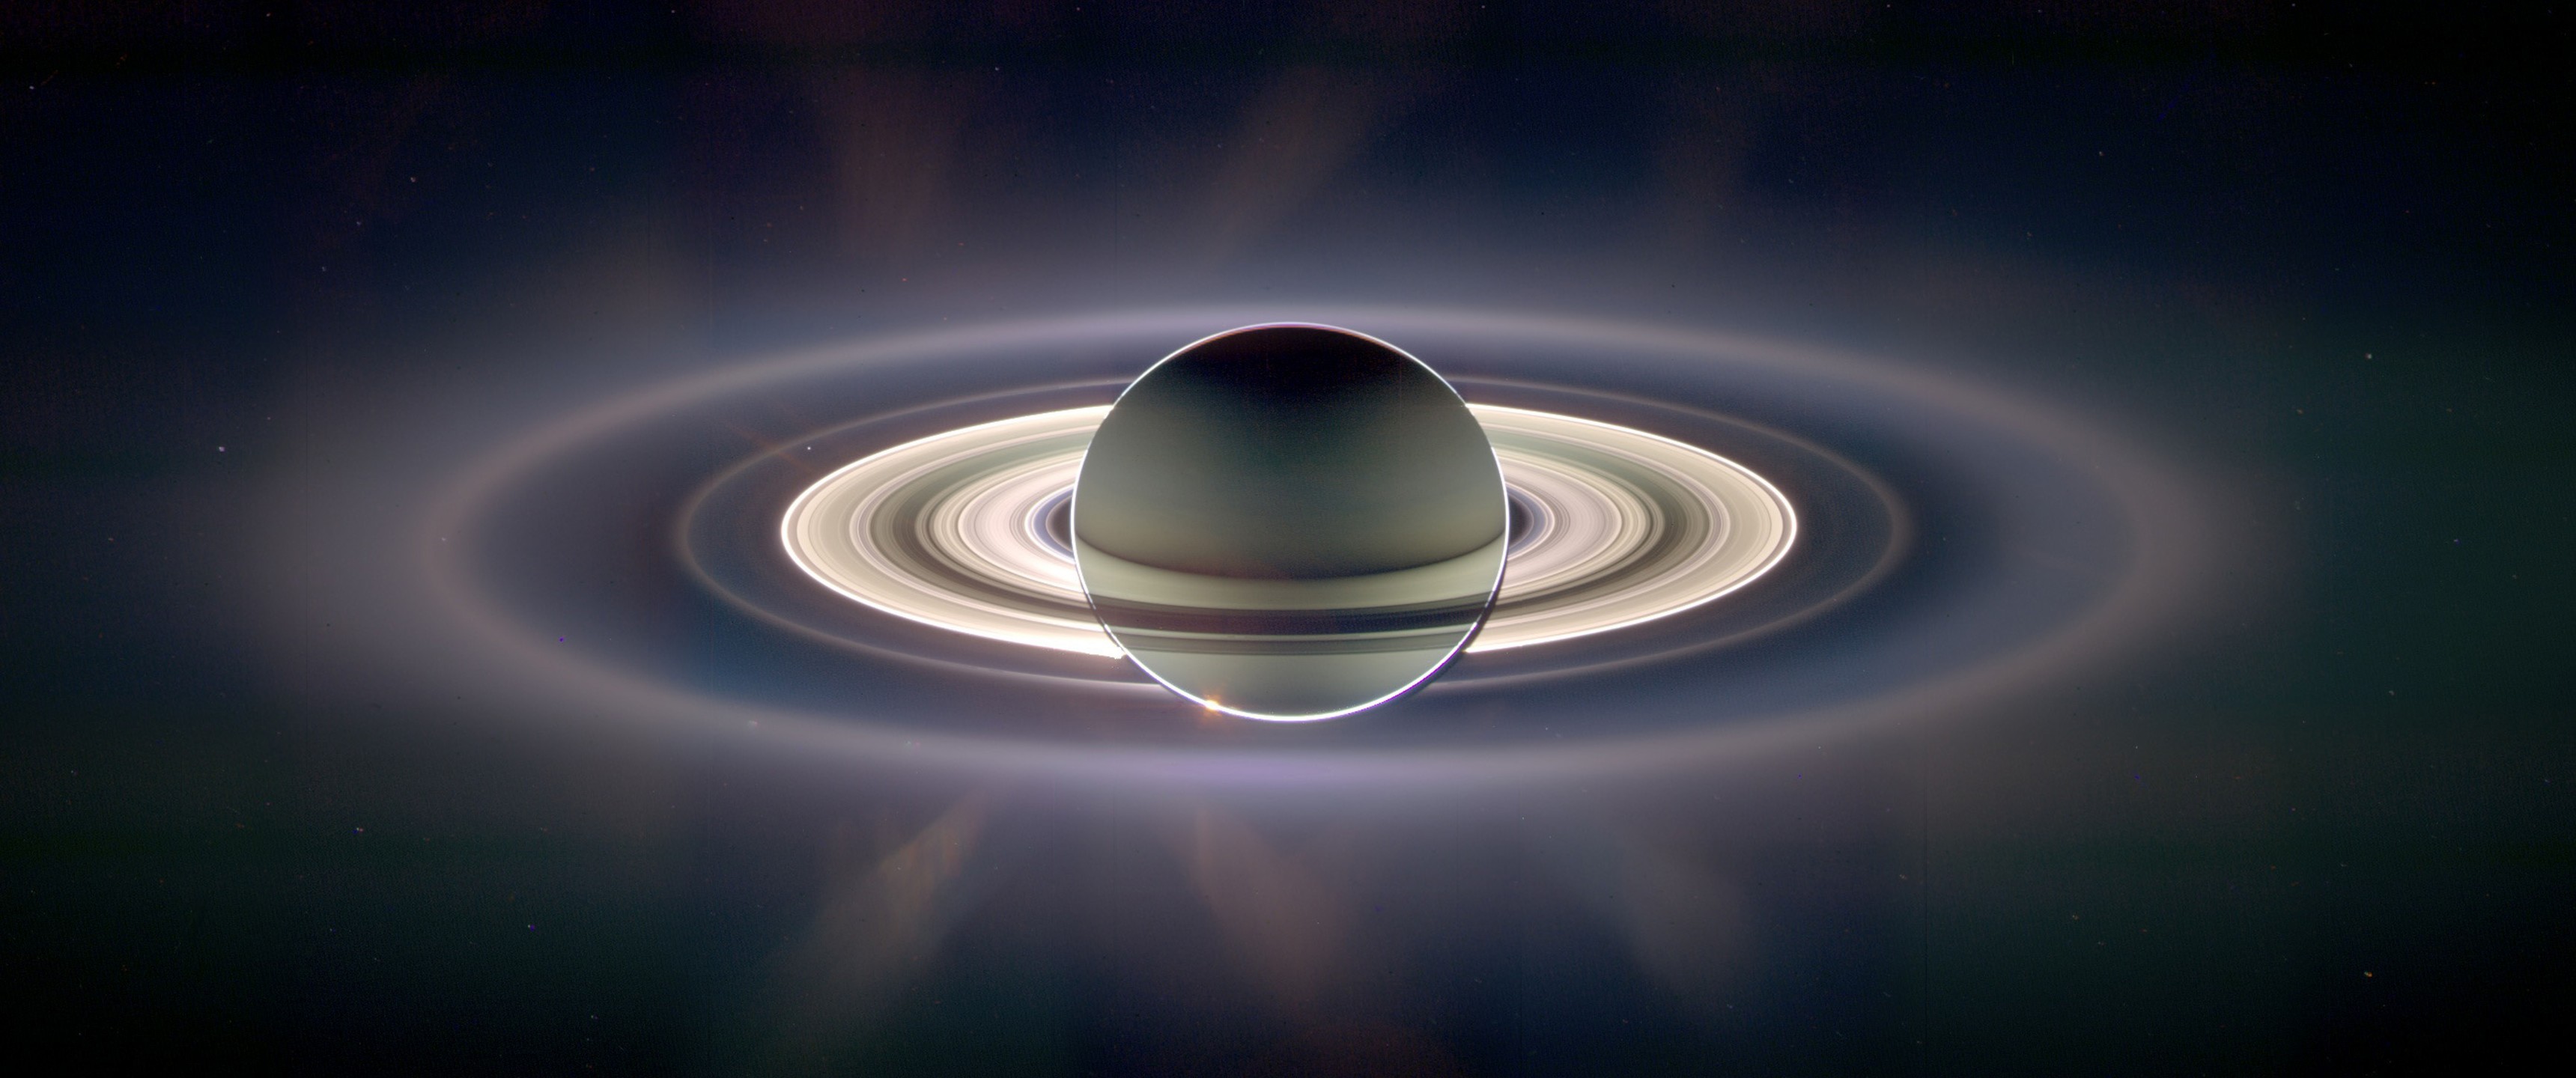 Sci Fi Saturn 3440x1440